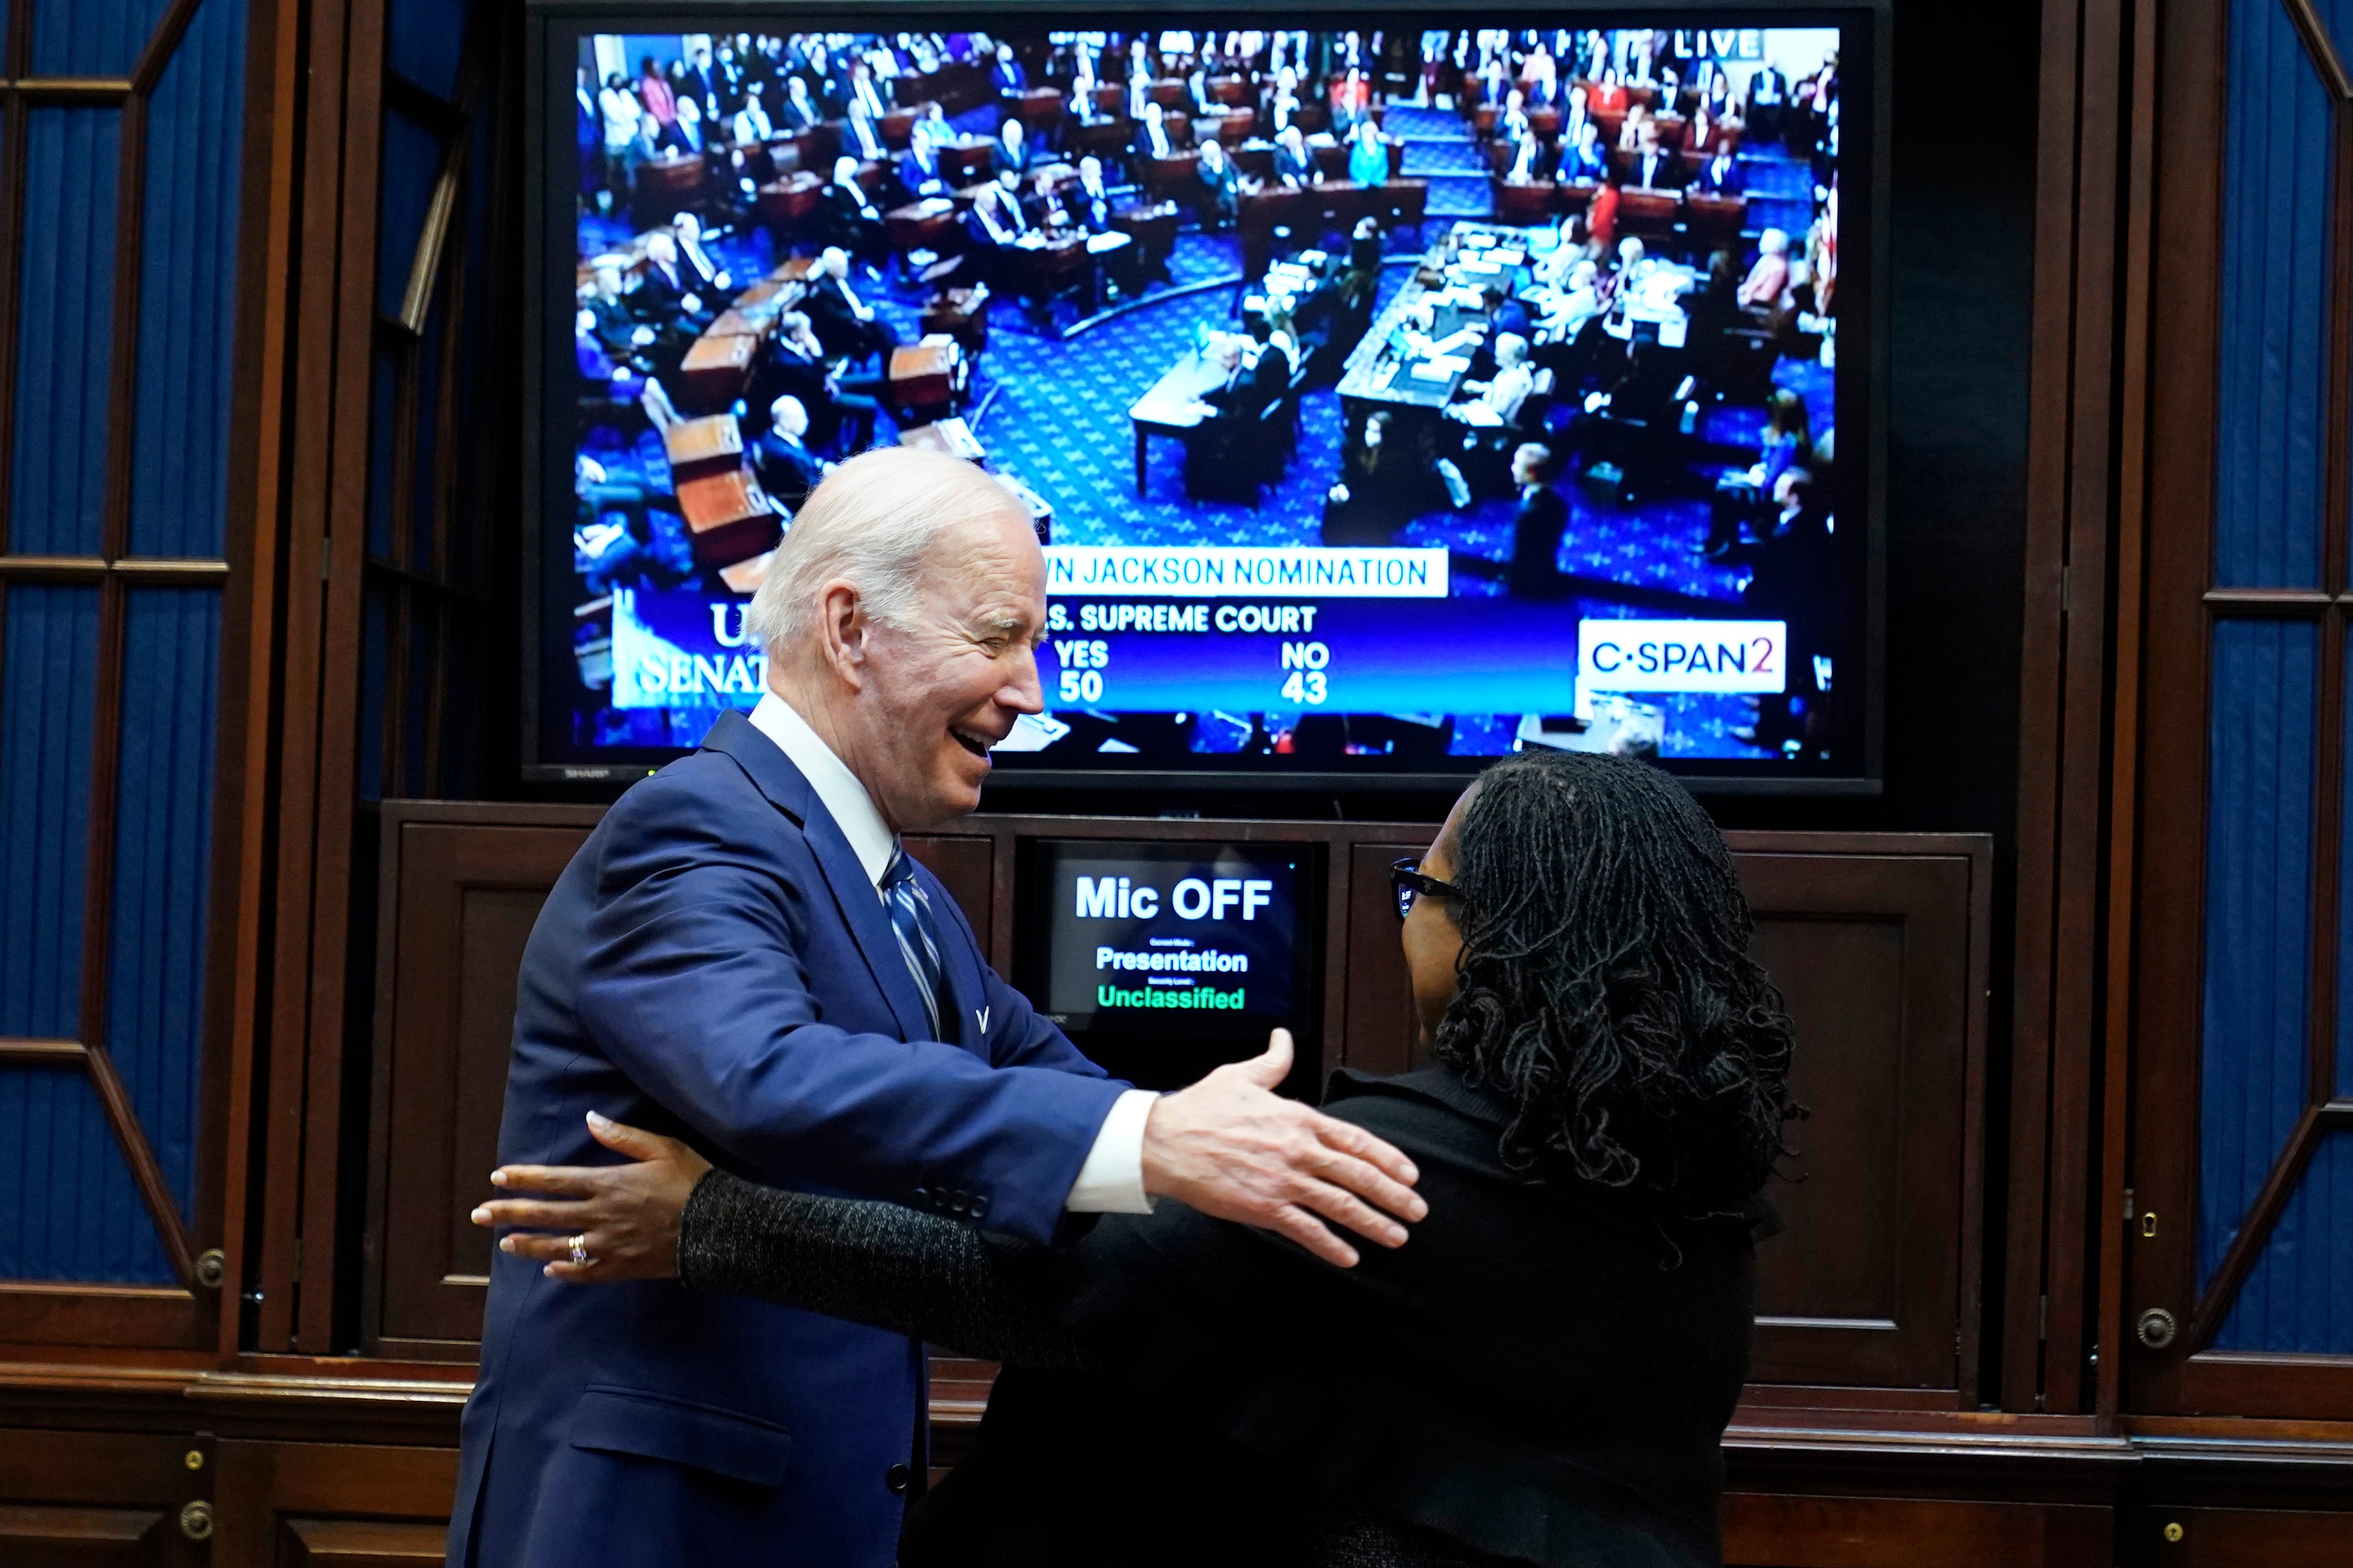 El presidente Biden y la jueza Jackson celebran su confirmación en la Casa Blanca